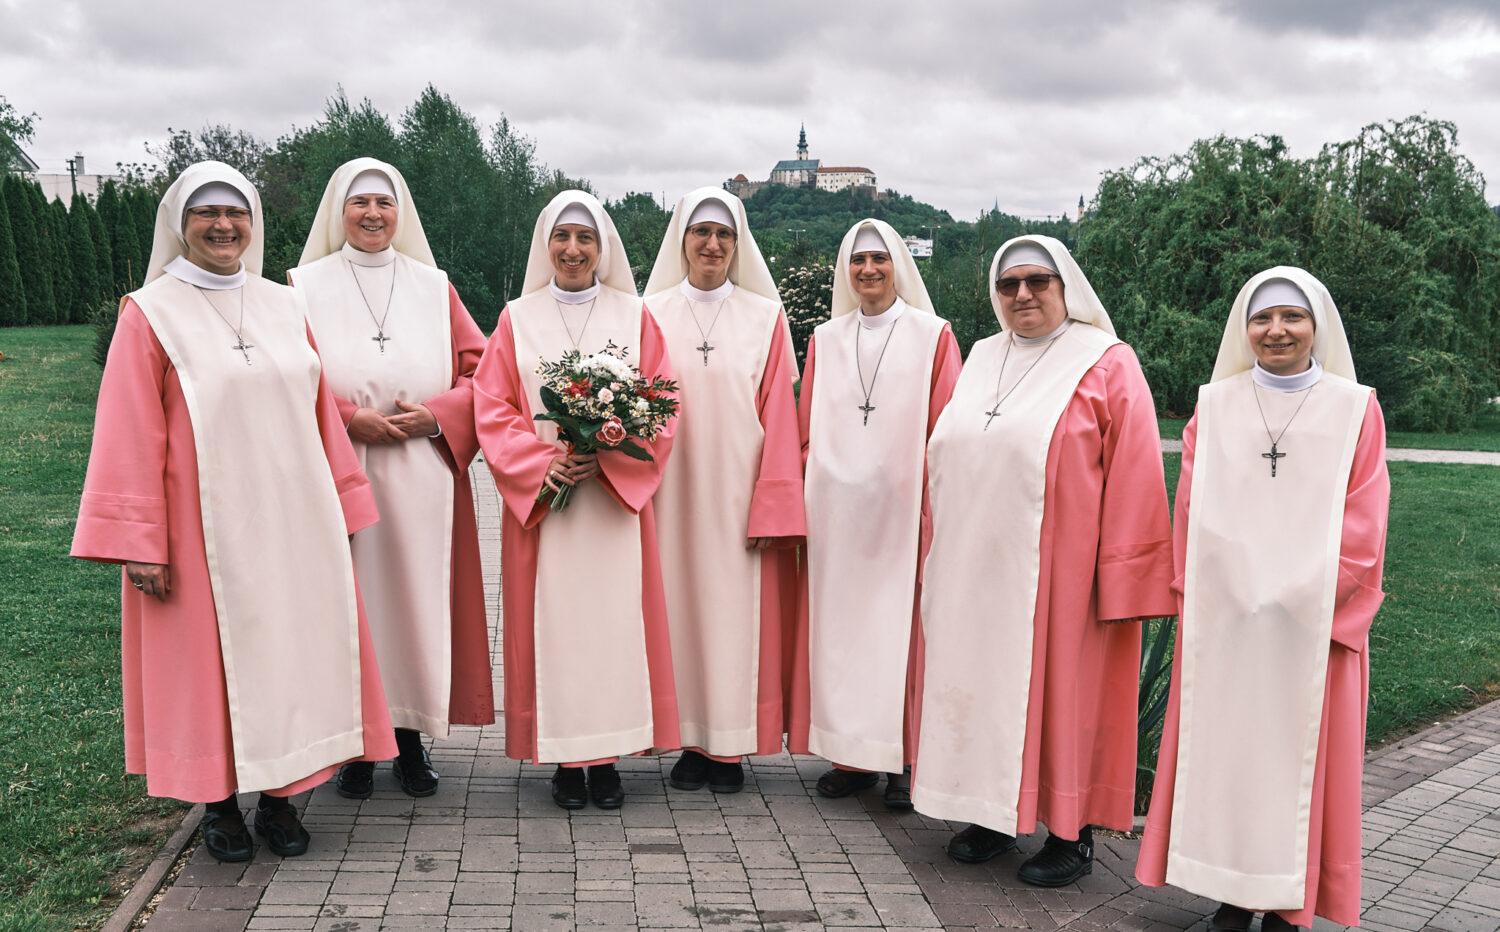 Ružová sestra Stella Mária Dolníková: Pred Eucharistiou netreba veľa rozprávať, ale veľa milovať